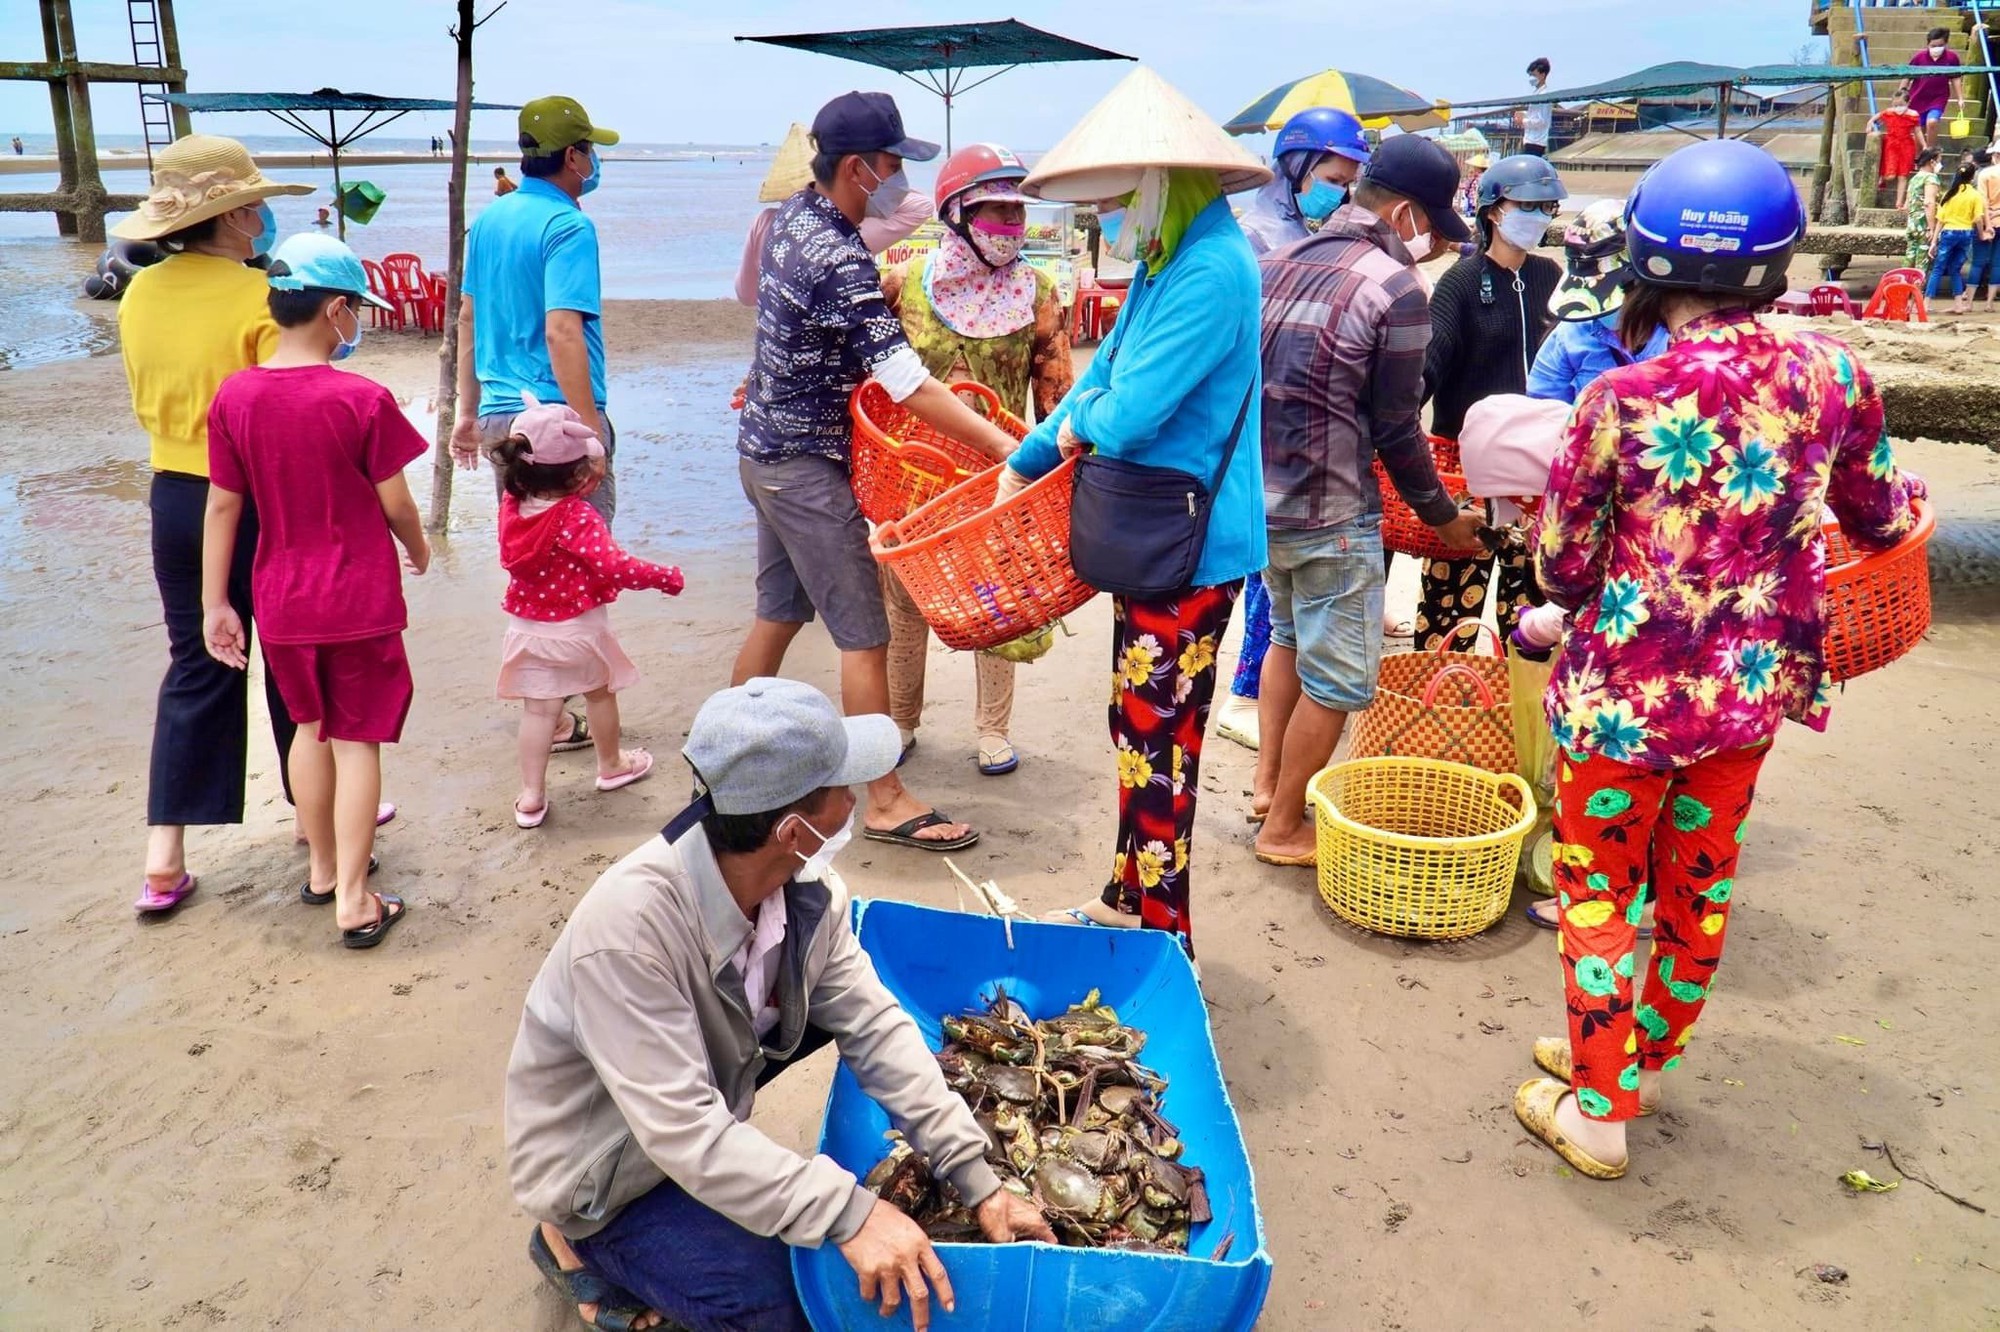 Chợ biển ở một huyện của Bến Tre họp ngay mép sóng, mua bán la liệt tôm, cua, cá, ốc ngon, lạ mắt- Ảnh 9.